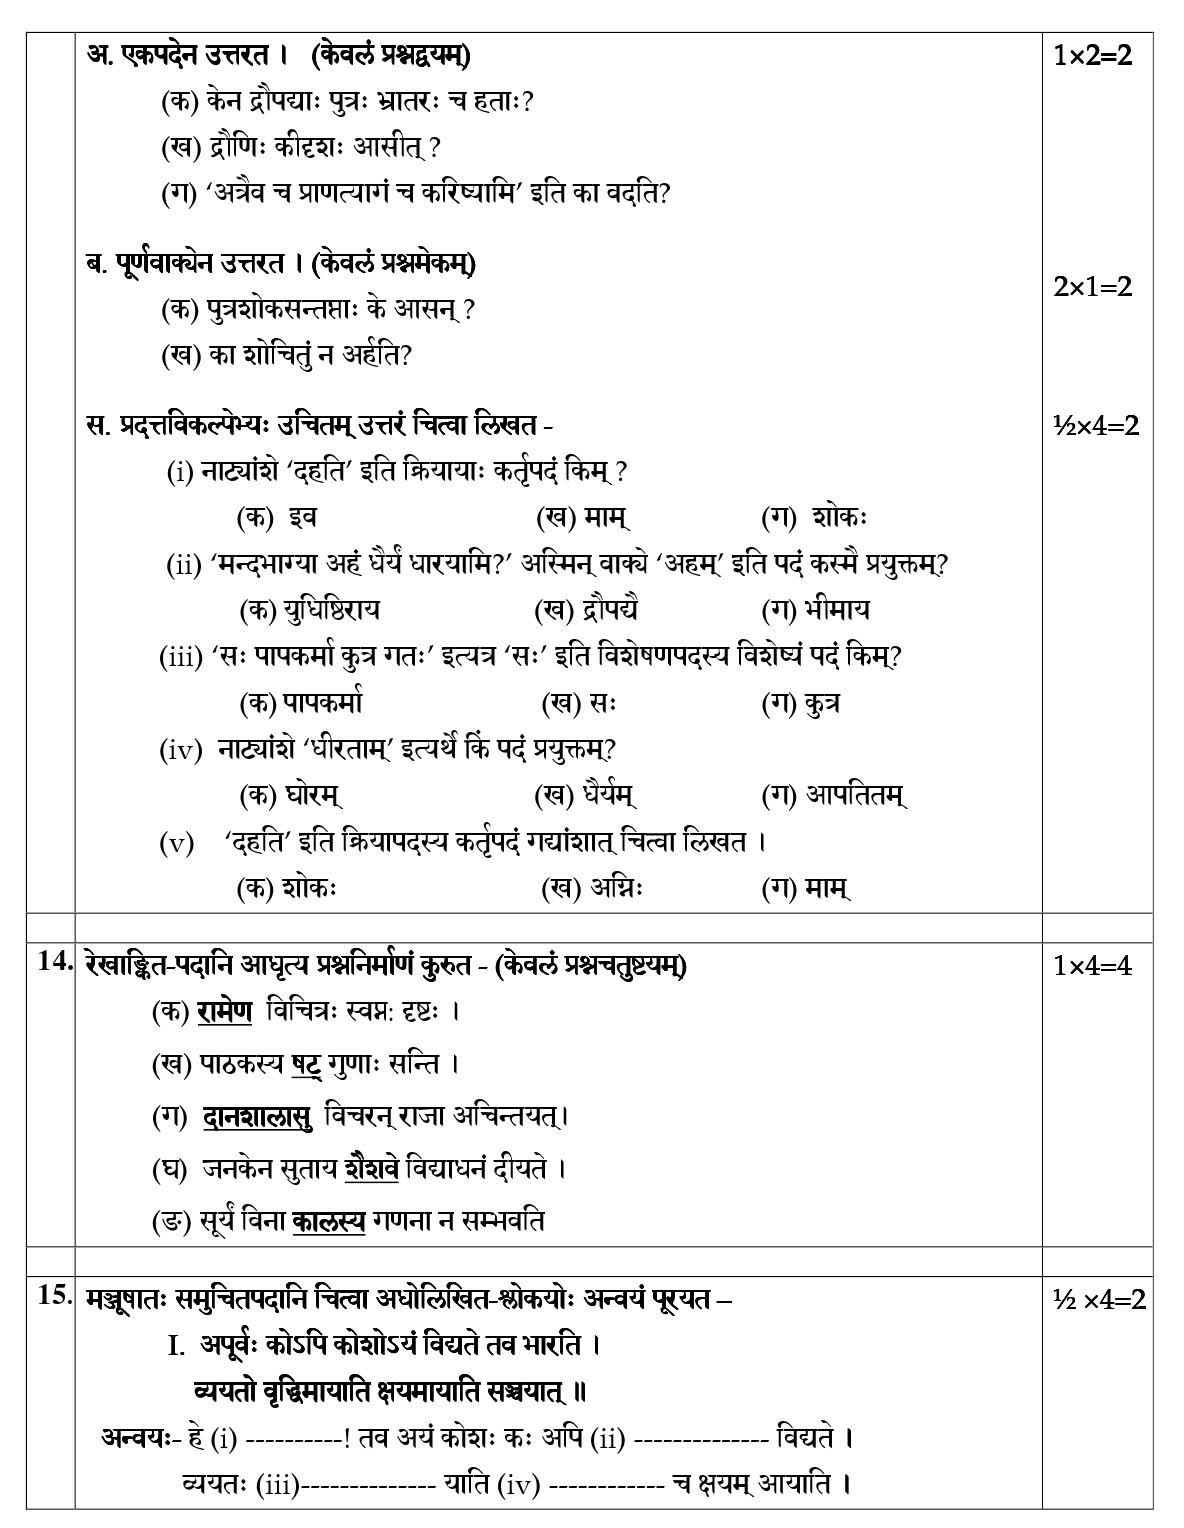 Sanskrit CBSE Class X Sample Question Paper 2018-19 - Image 9